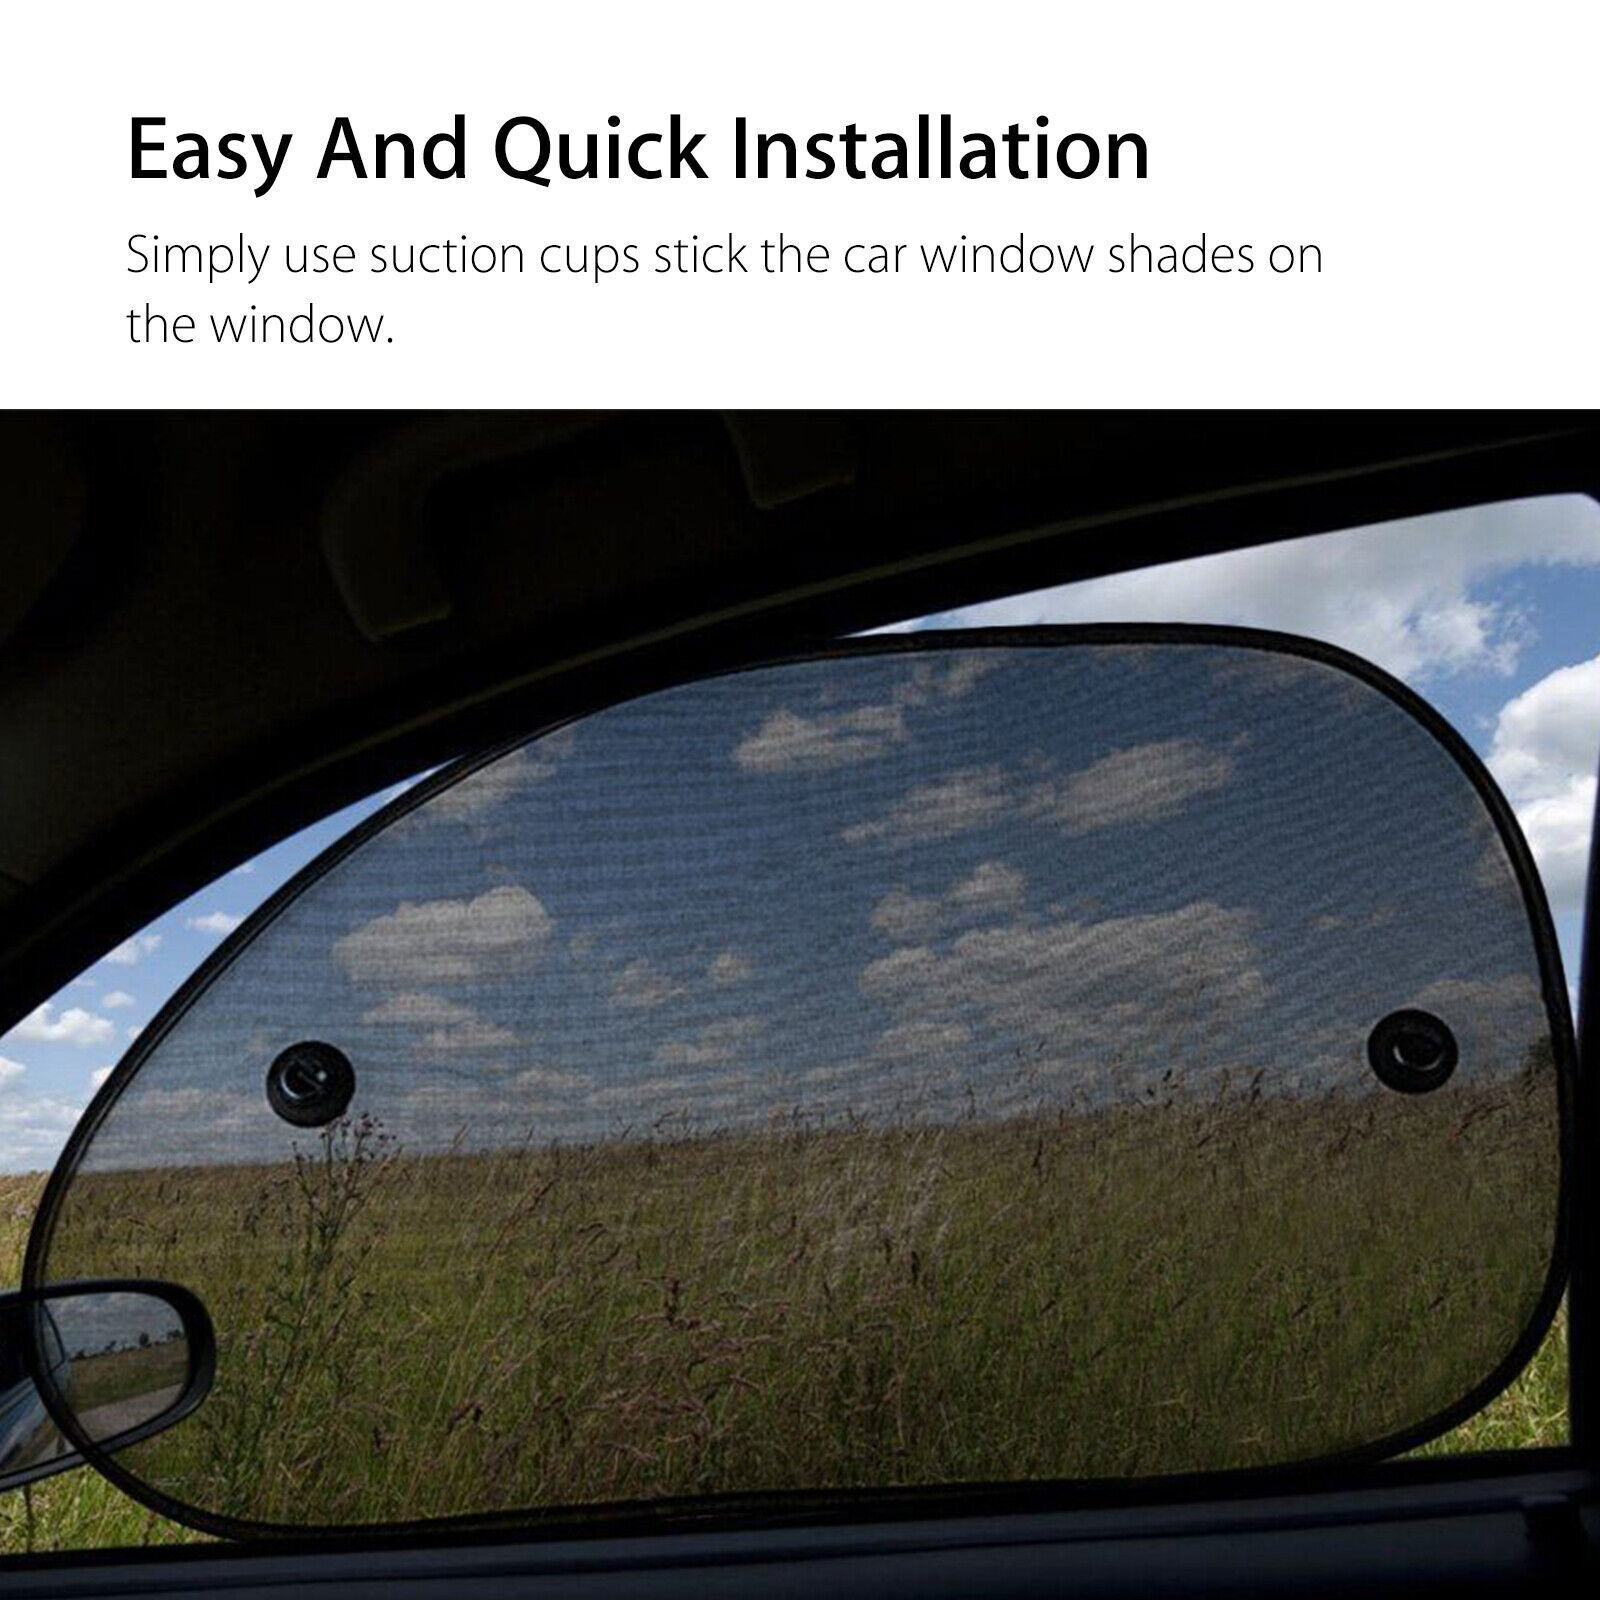 2PCS Car Side Rear Window Screen Sun Shade Mesh Cover Windshield Sunshade Visor Geartronics Sun Shade Mesh Cover - фотография #9